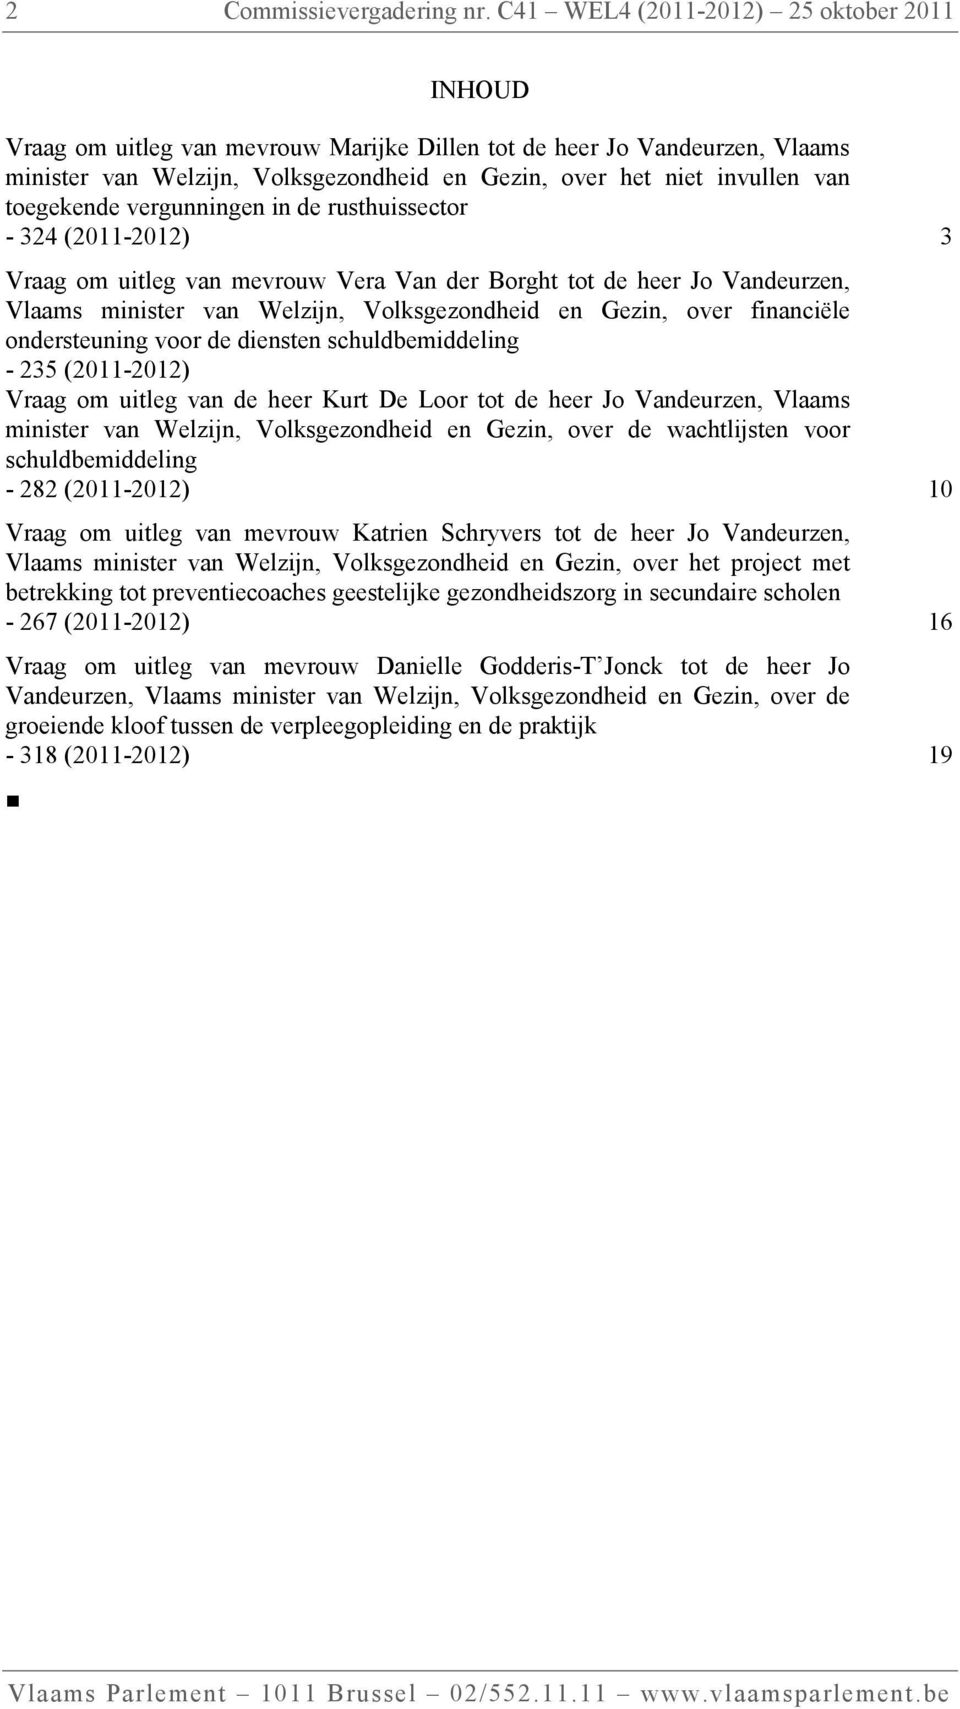 toegekende vergunningen in de rusthuissector - 324 (2011-2012) 3 Vraag om uitleg van mevrouw Vera Van der Borght tot de heer Jo Vandeurzen, Vlaams minister van Welzijn, Volksgezondheid en Gezin, over